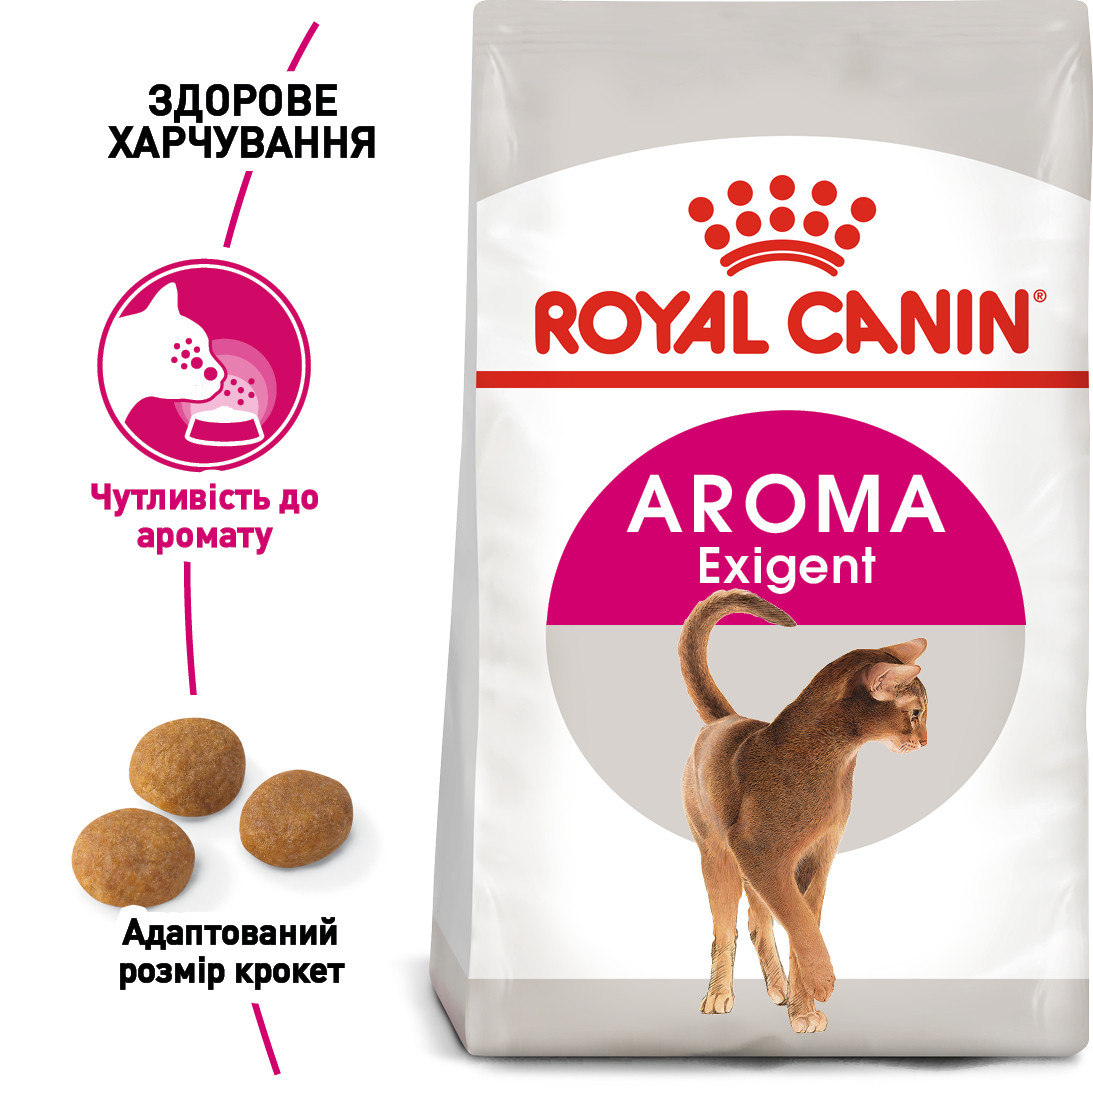 Royal Canin Exigent 33 Aromatik Attraction сухий дорослих корм для котів вибагливих до запаху їжі, 10КГ